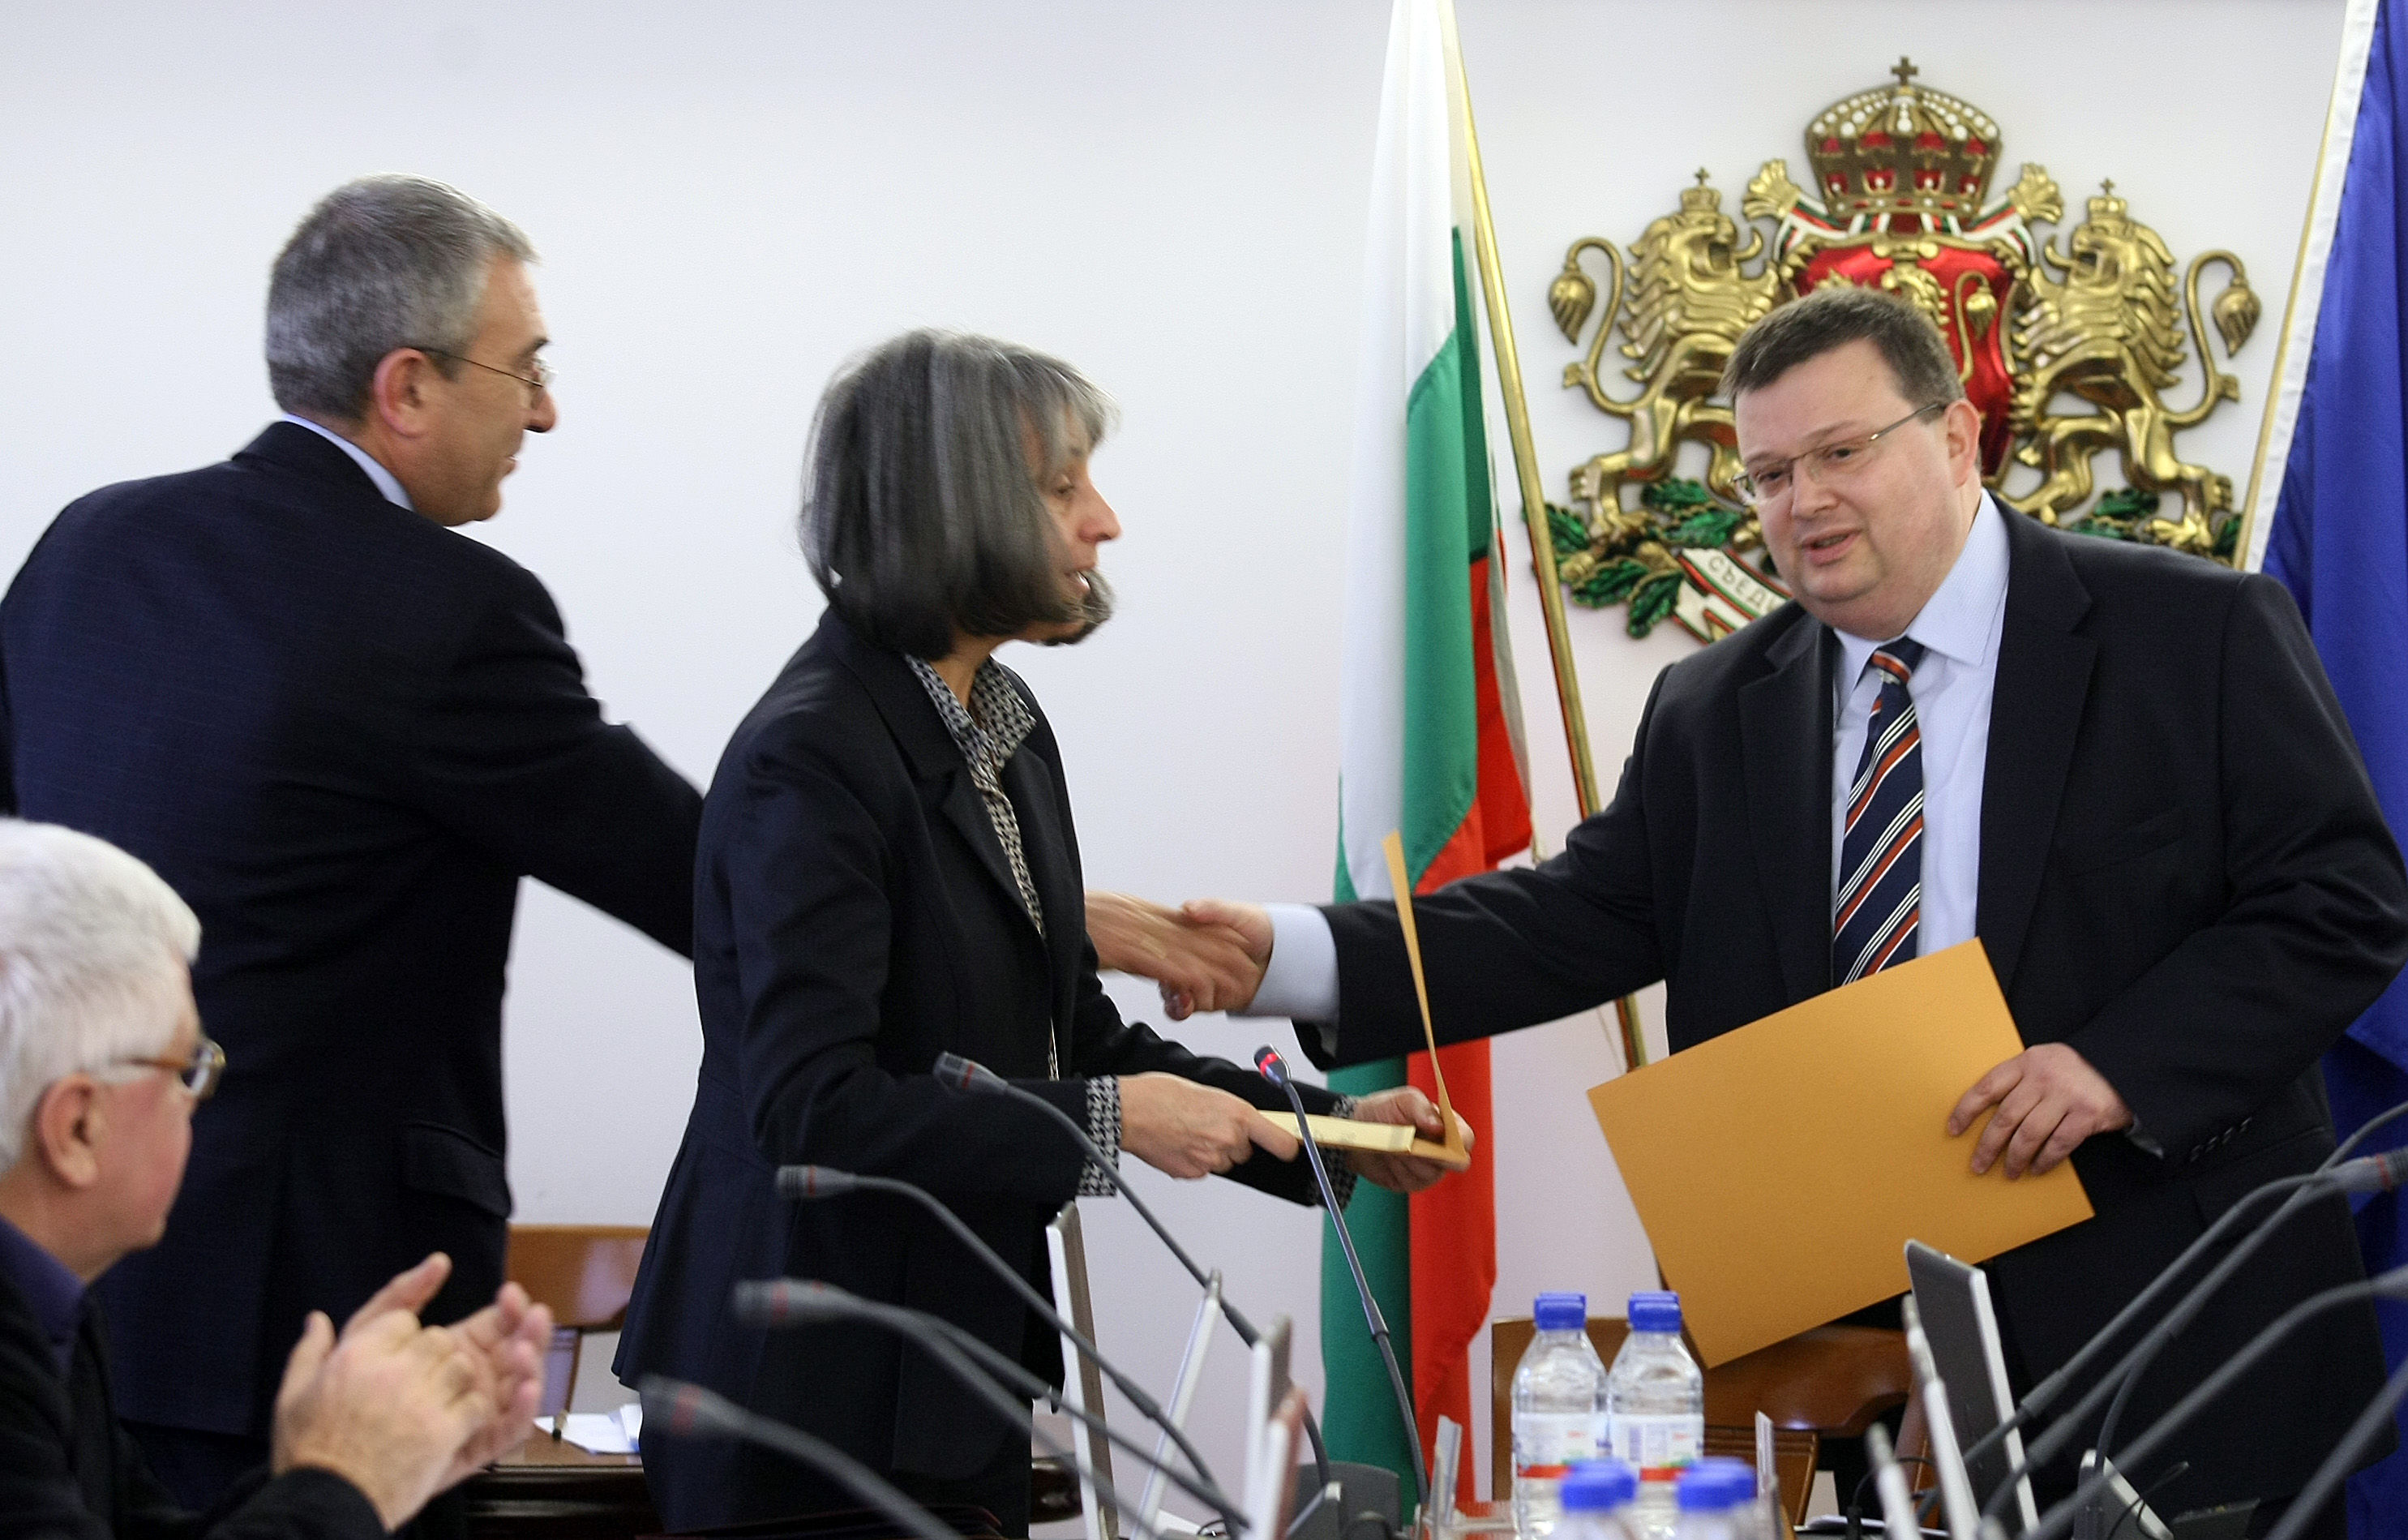 Цацаров поиска нов ред за избор на главен прокурор